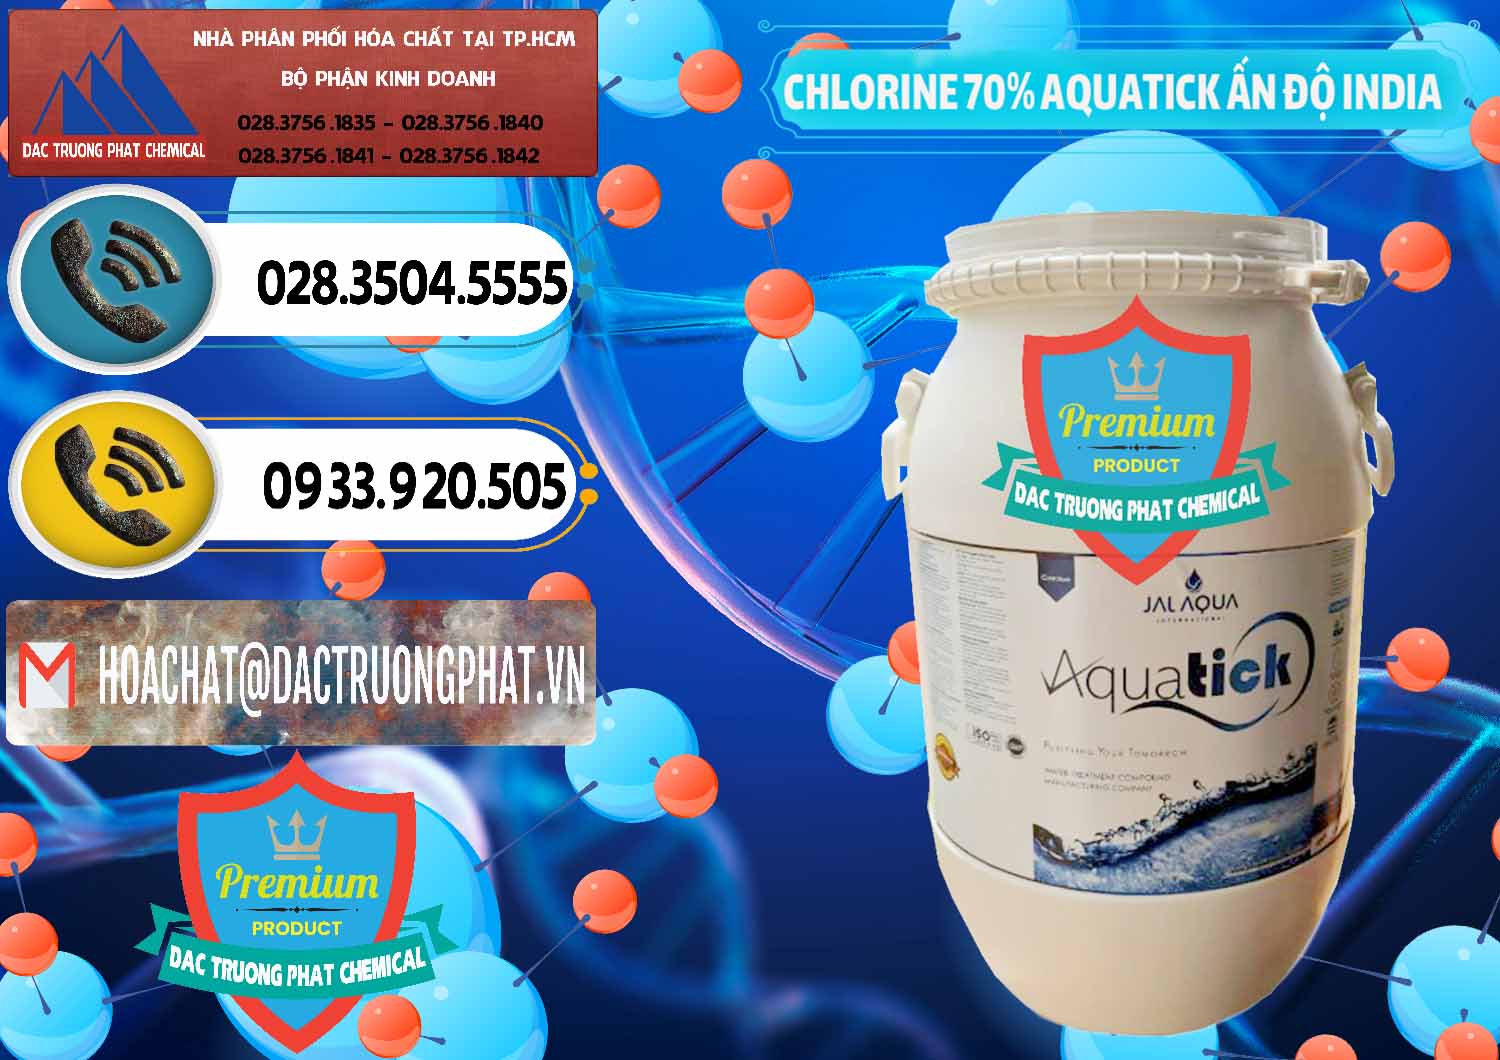 Phân phối - bán Chlorine – Clorin 70% Aquatick Jal Aqua Ấn Độ India - 0215 - Chuyên phân phối & bán hóa chất tại TP.HCM - hoachatdetnhuom.vn